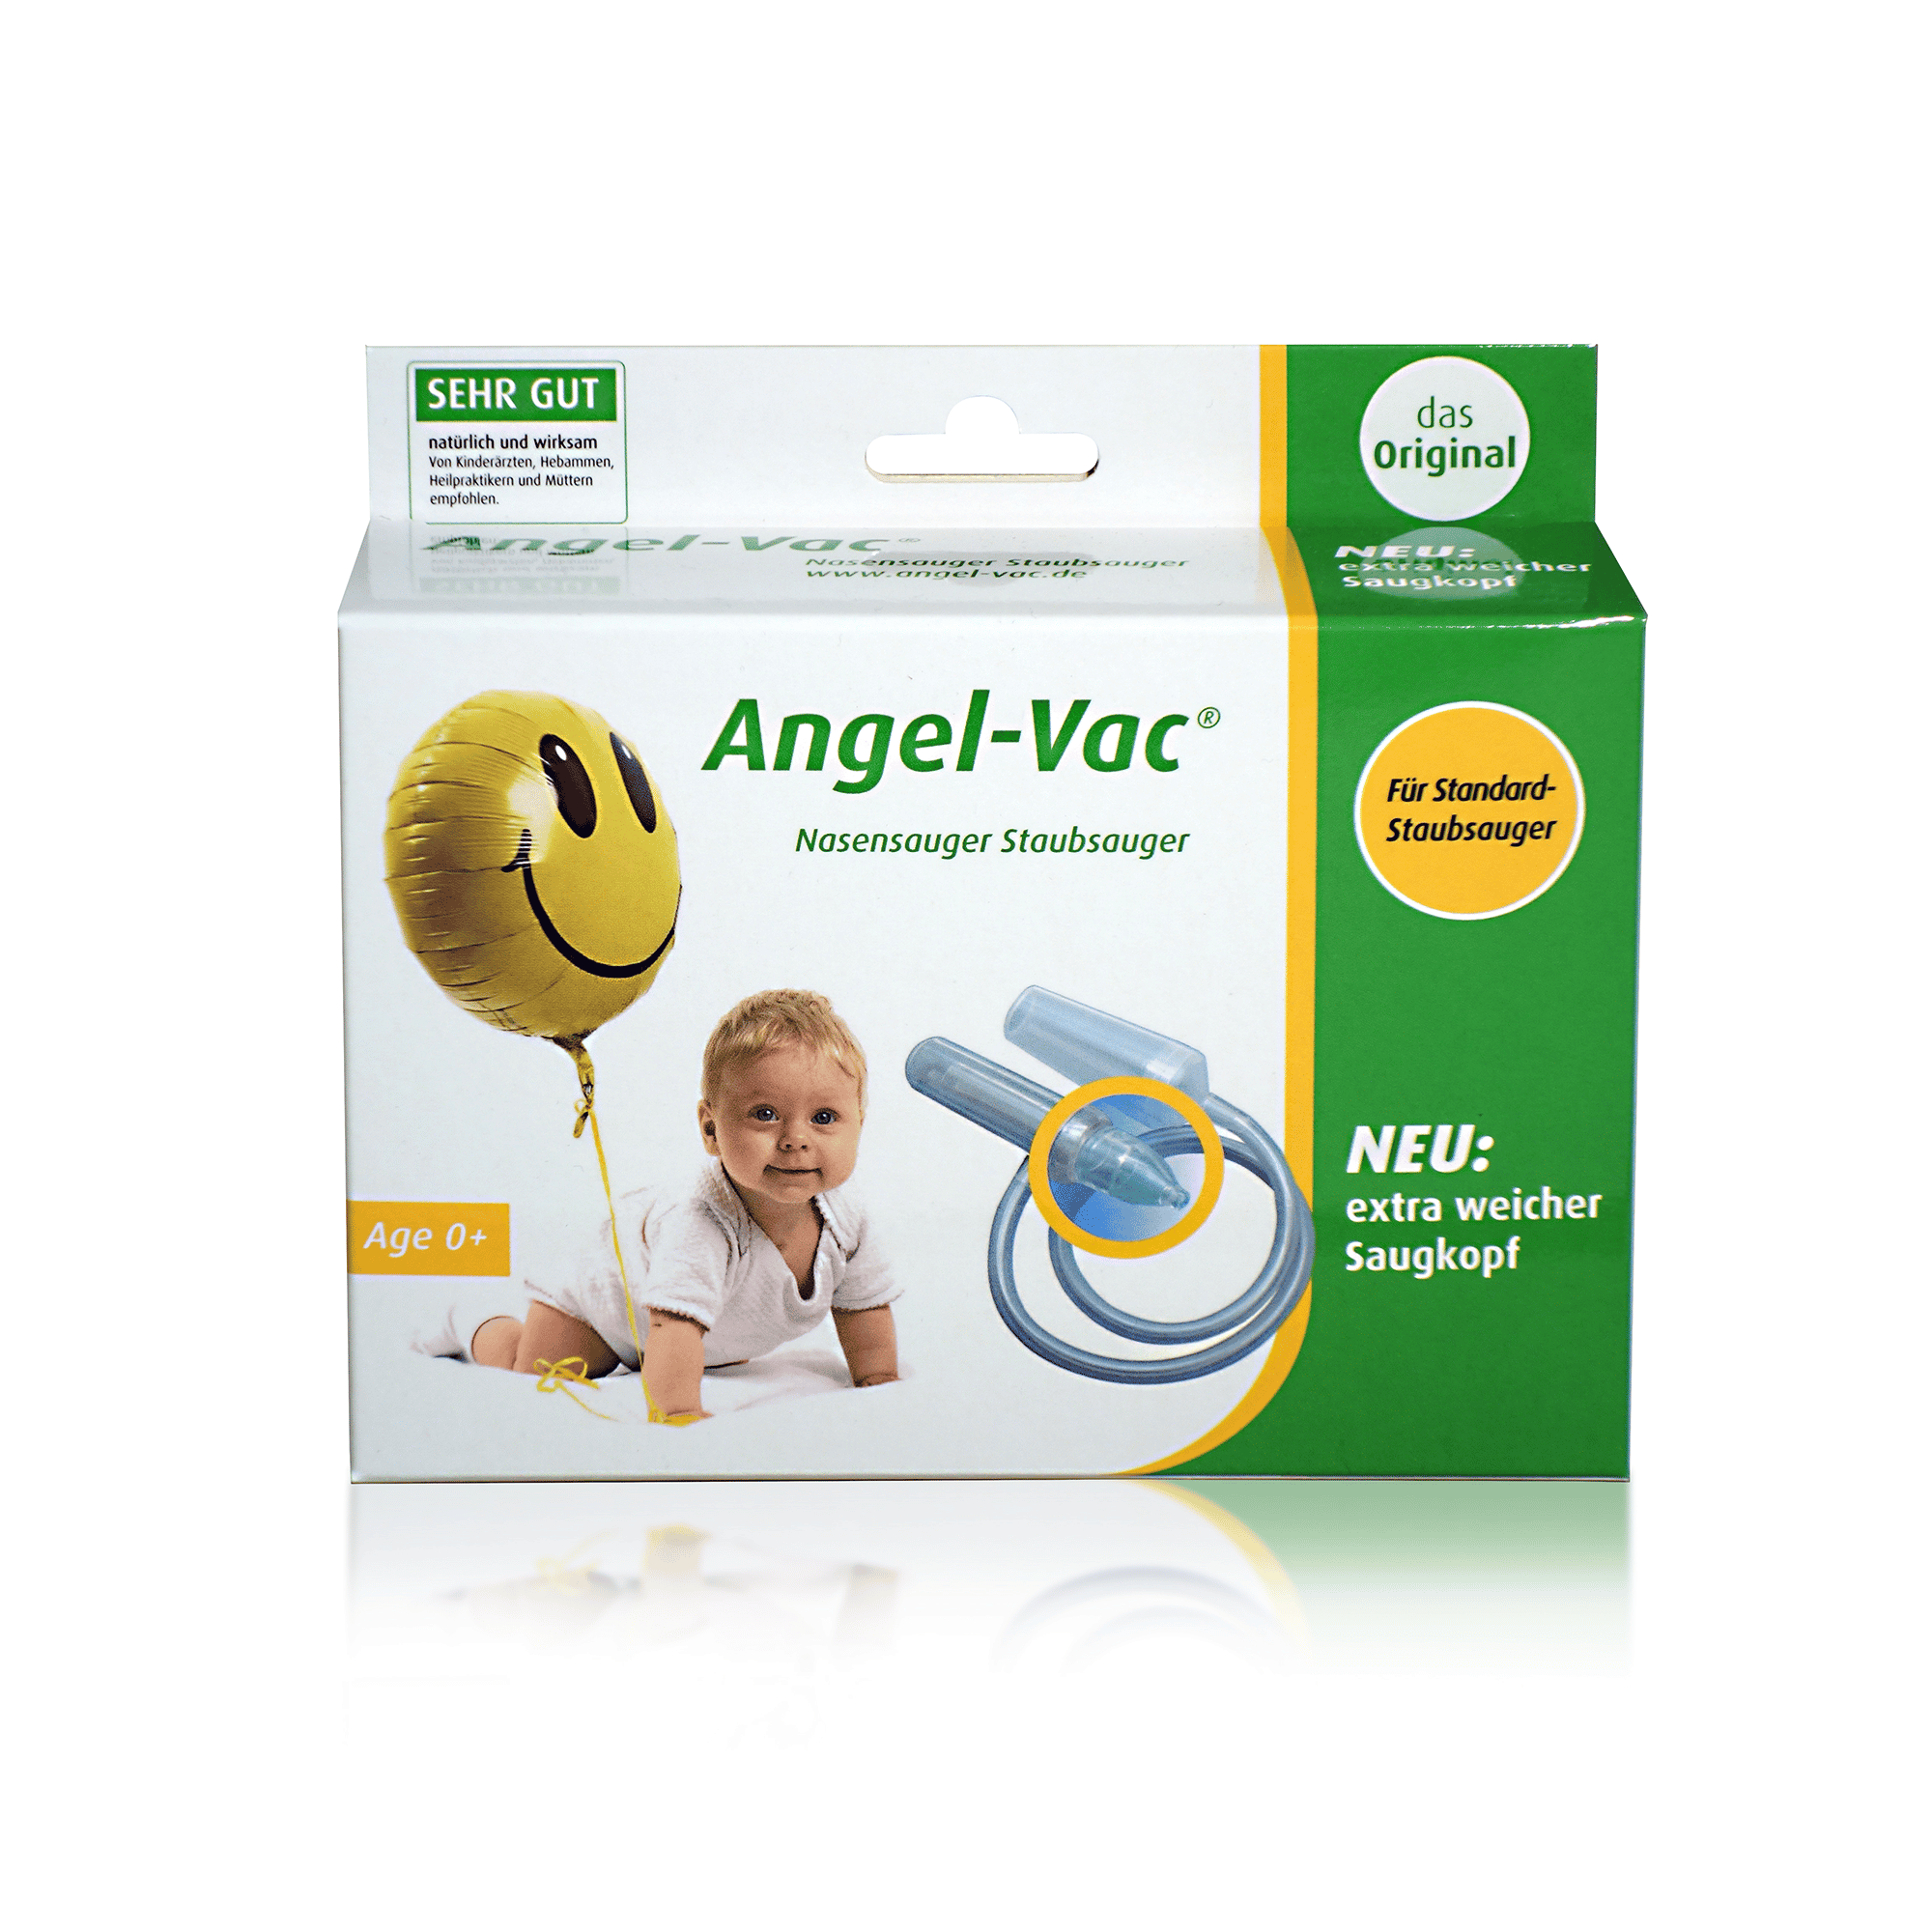 Angel-Vac Nasensauger für Standard Staubsauger Angel-Vac Transparent Weiß 2000570771704 7